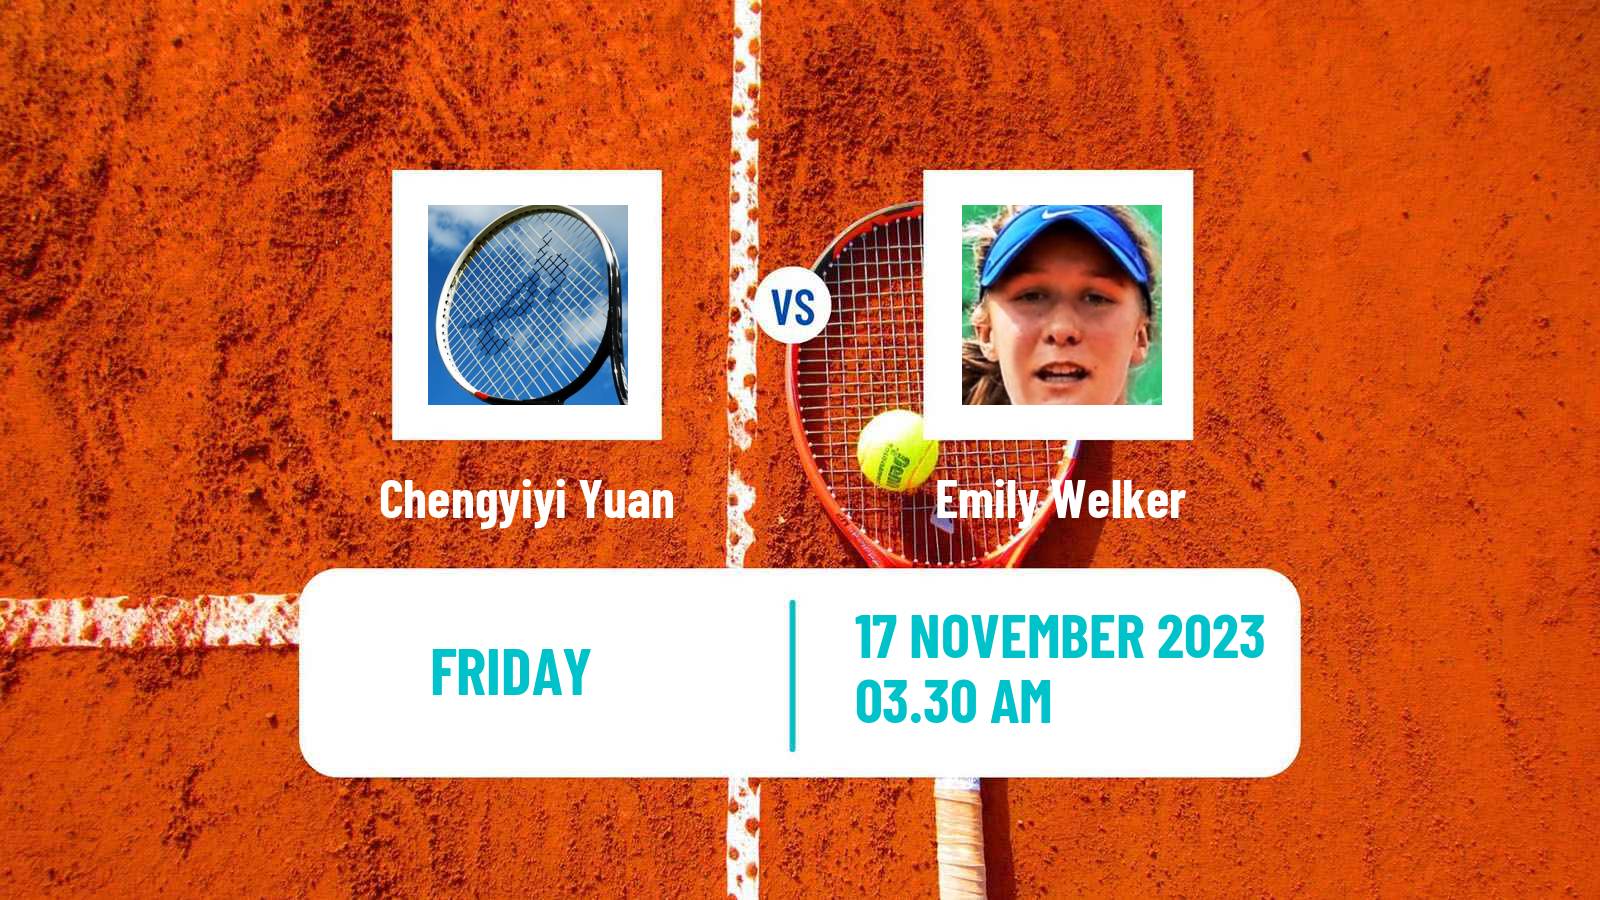 Tennis ITF W15 Monastir 40 Women Chengyiyi Yuan - Emily Welker